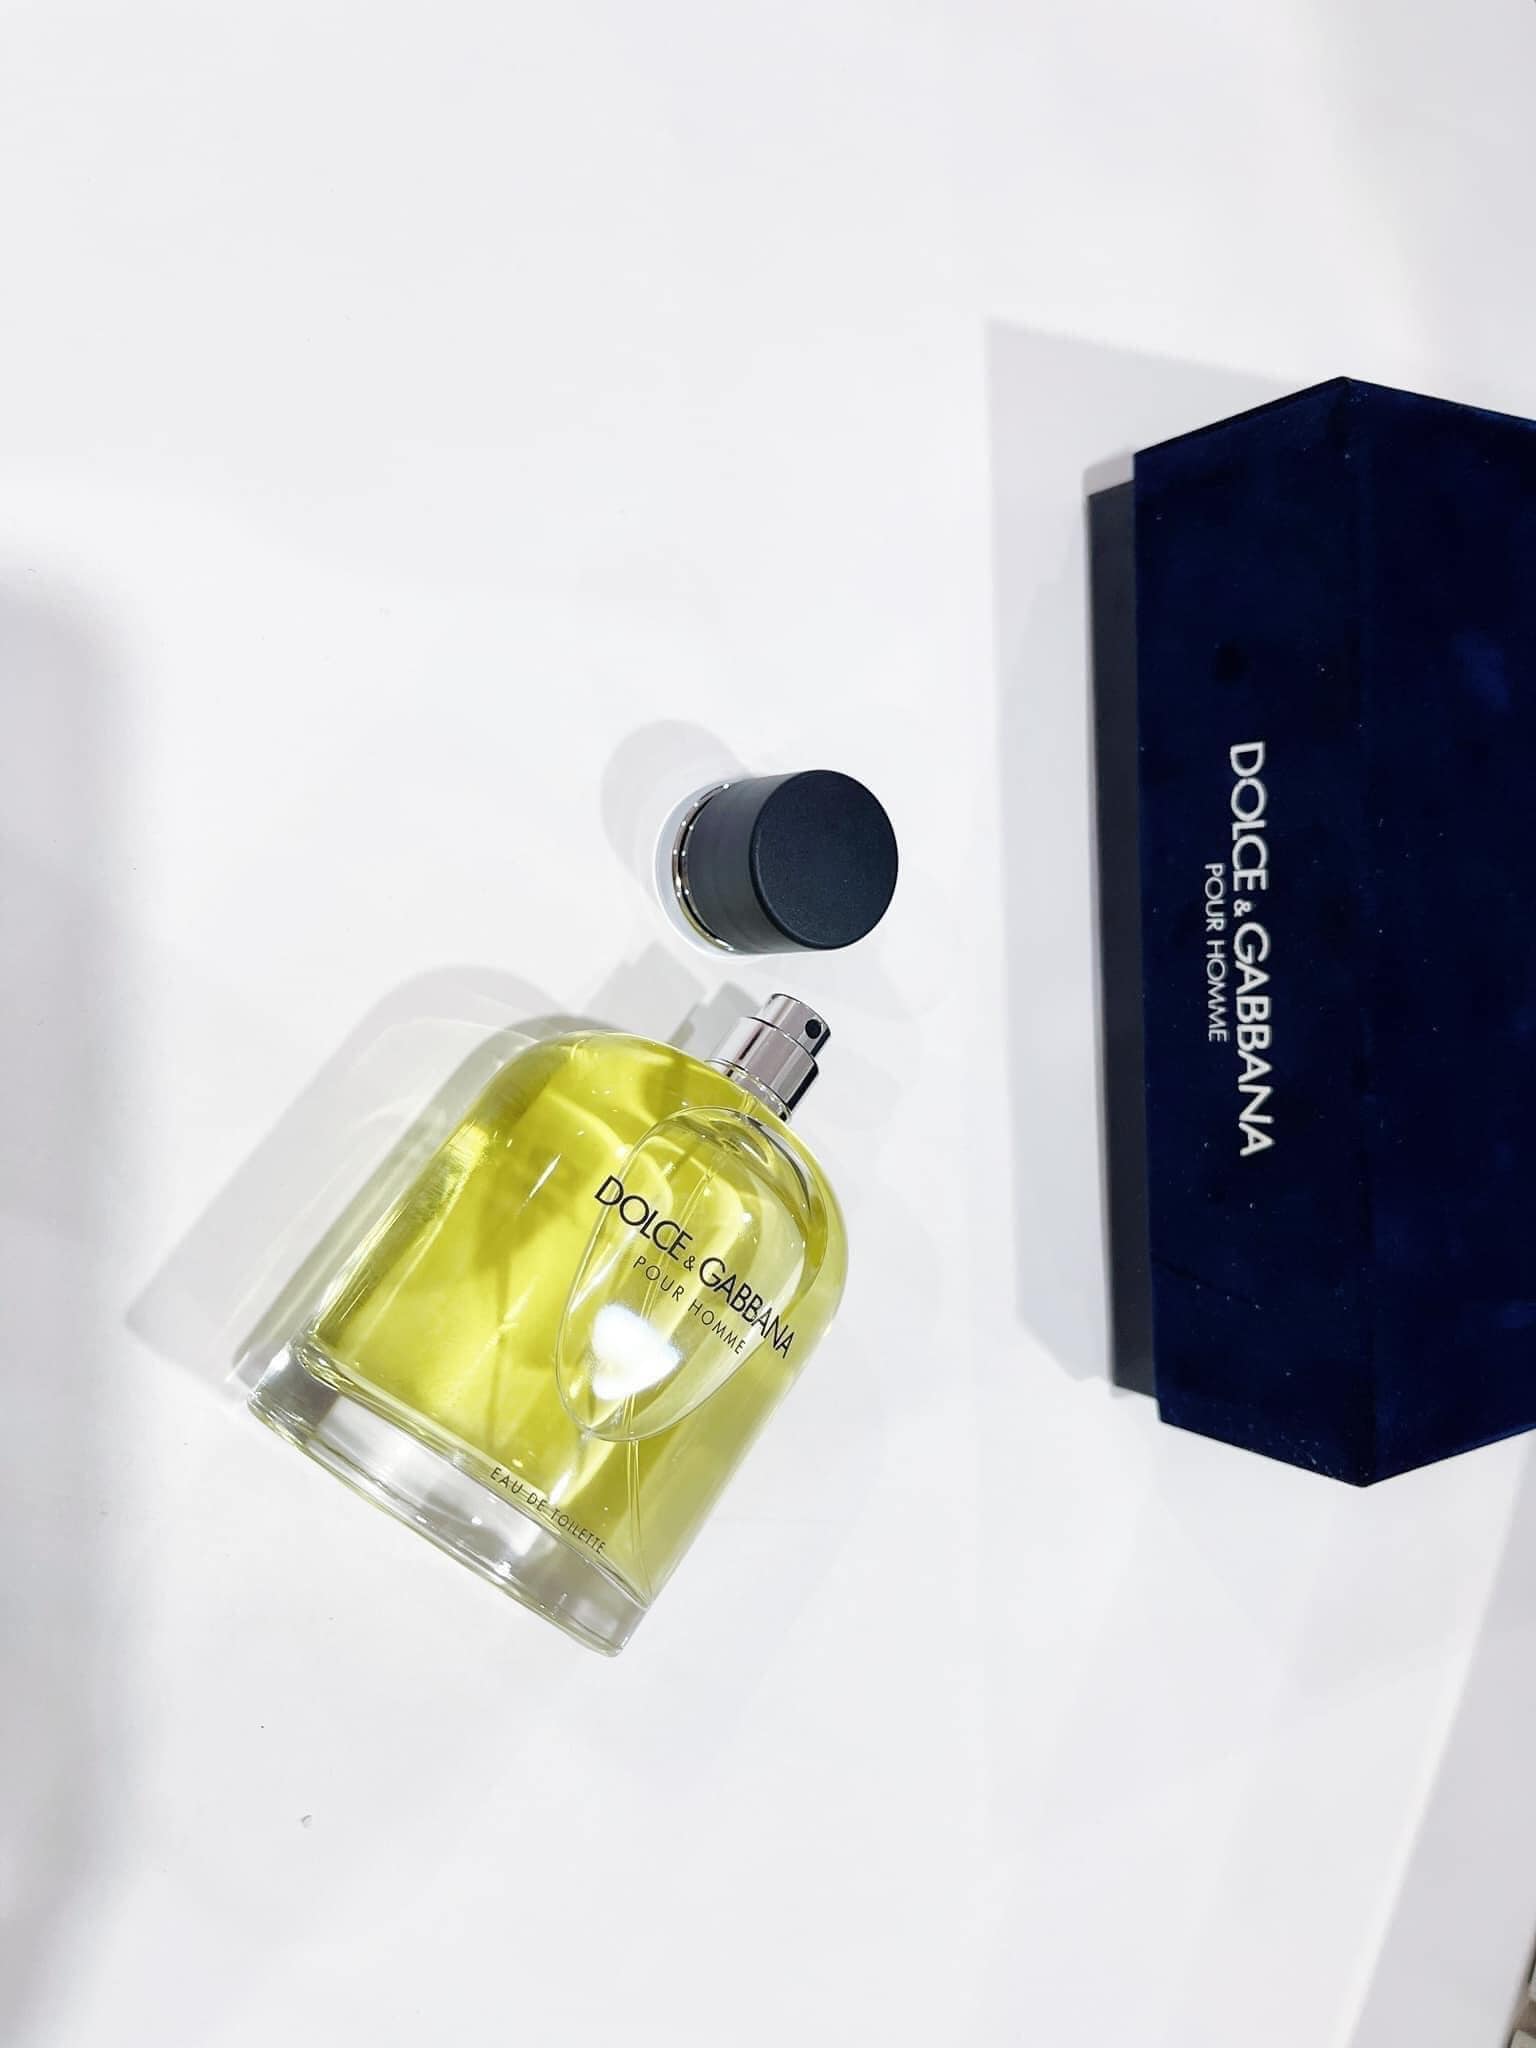 Dolce Gabbana Pour Homme 2 - Nuochoarosa.com - Nước hoa cao cấp, chính hãng giá tốt, mẫu mới